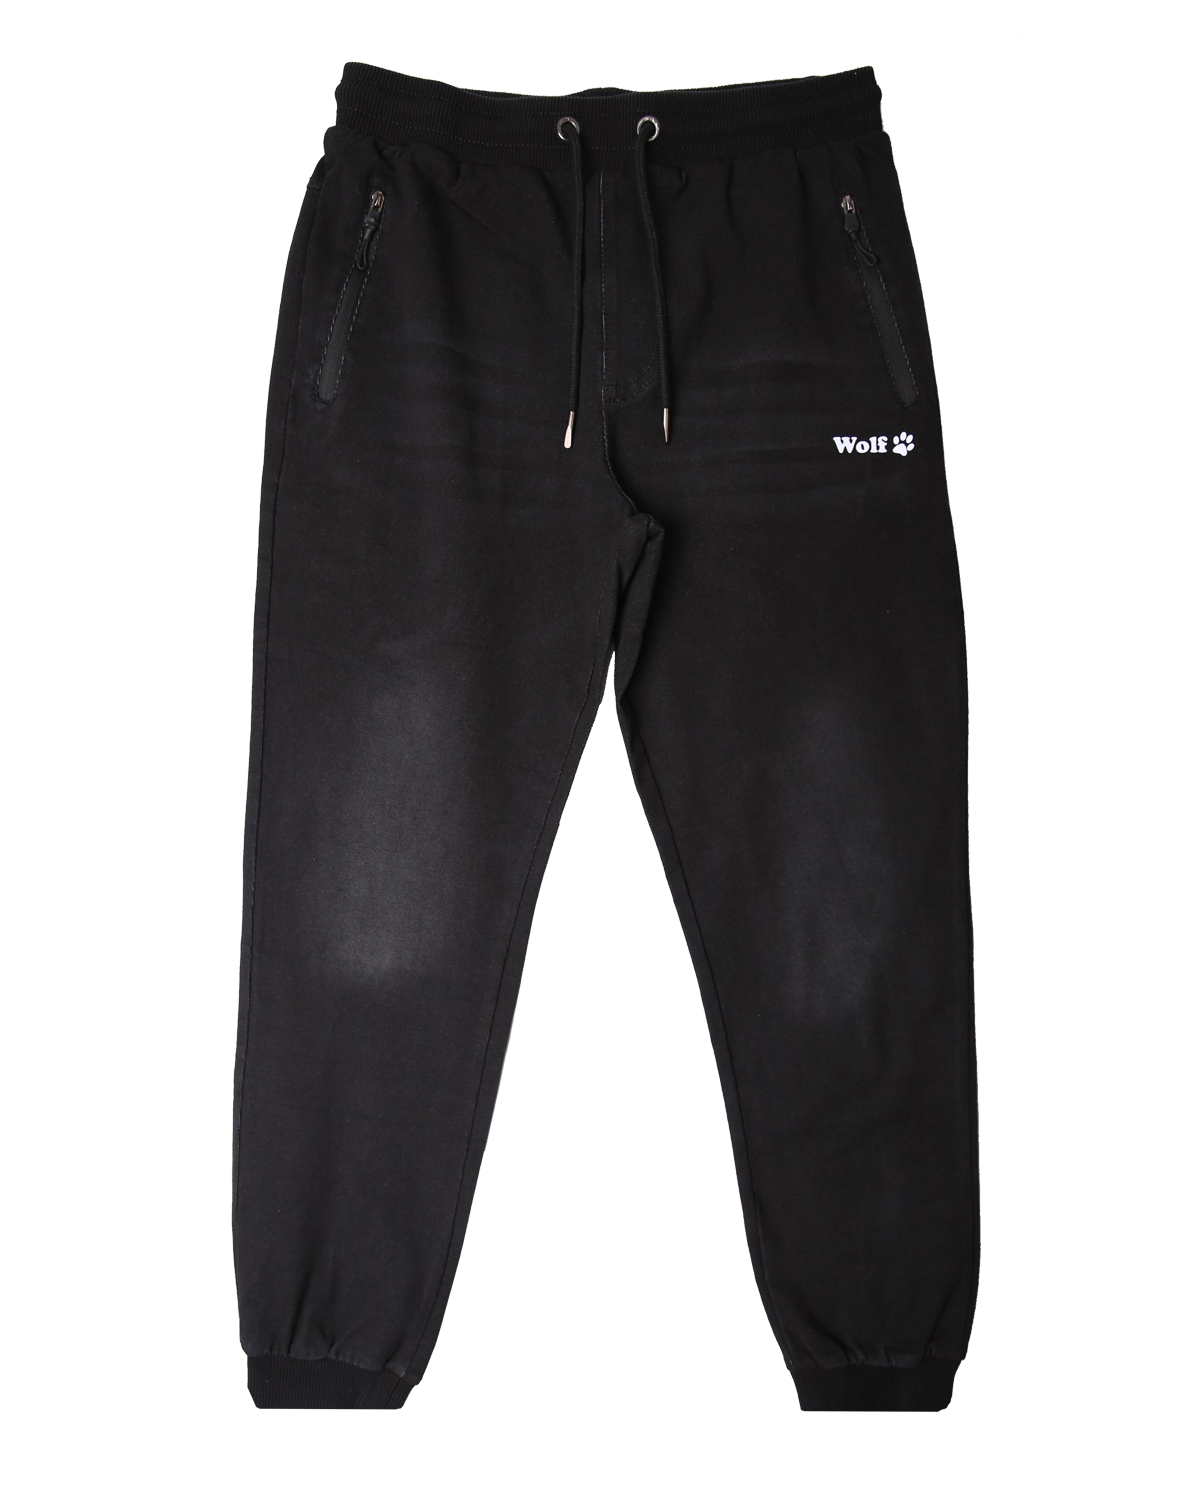 Chlapecké riflové kalhoty, tepláky - Wolf T2461, černá Barva: Černá, Velikost: 140